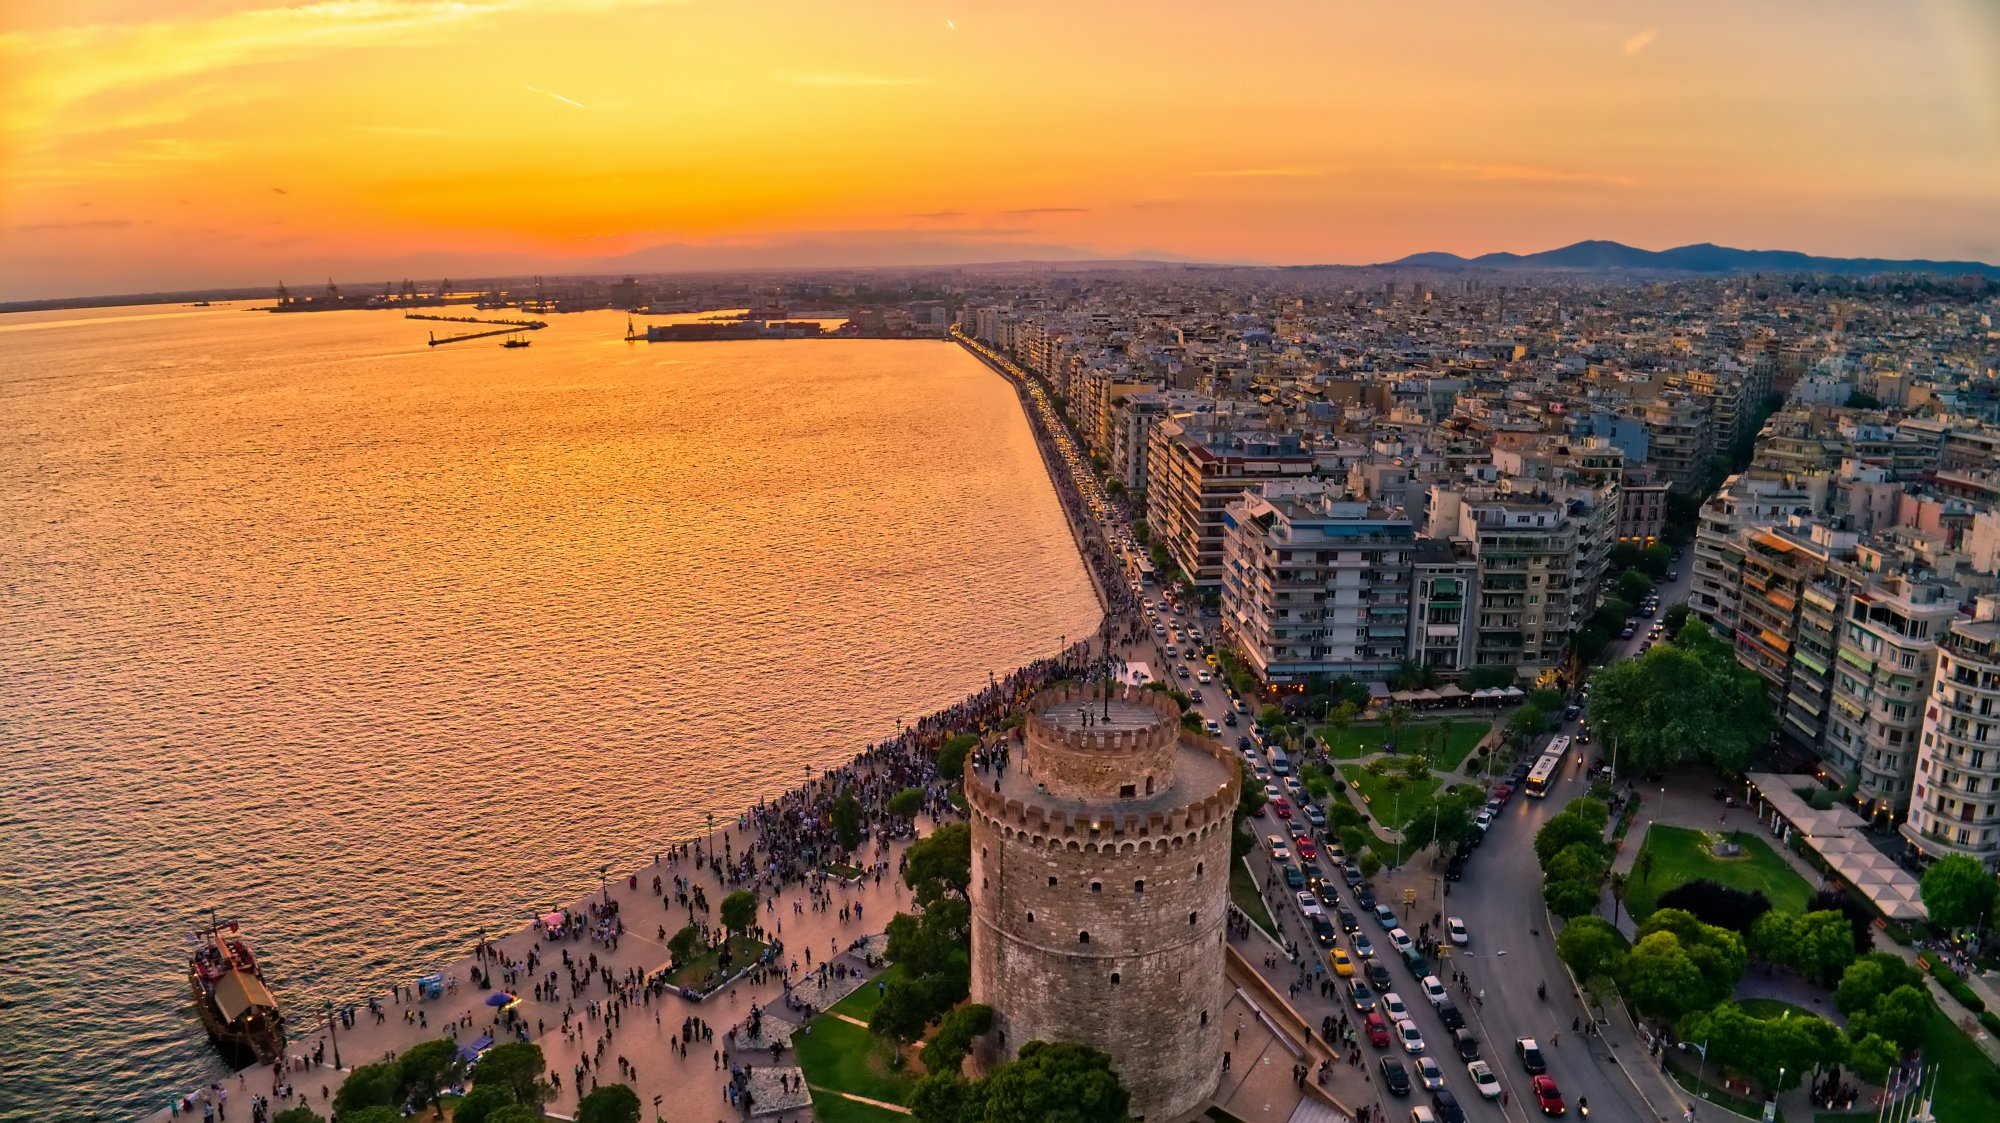 Θεσσαλονίκη: Σε ρότα ανάταξης οι υποδομές με την καχυποψία να βασιλεύει